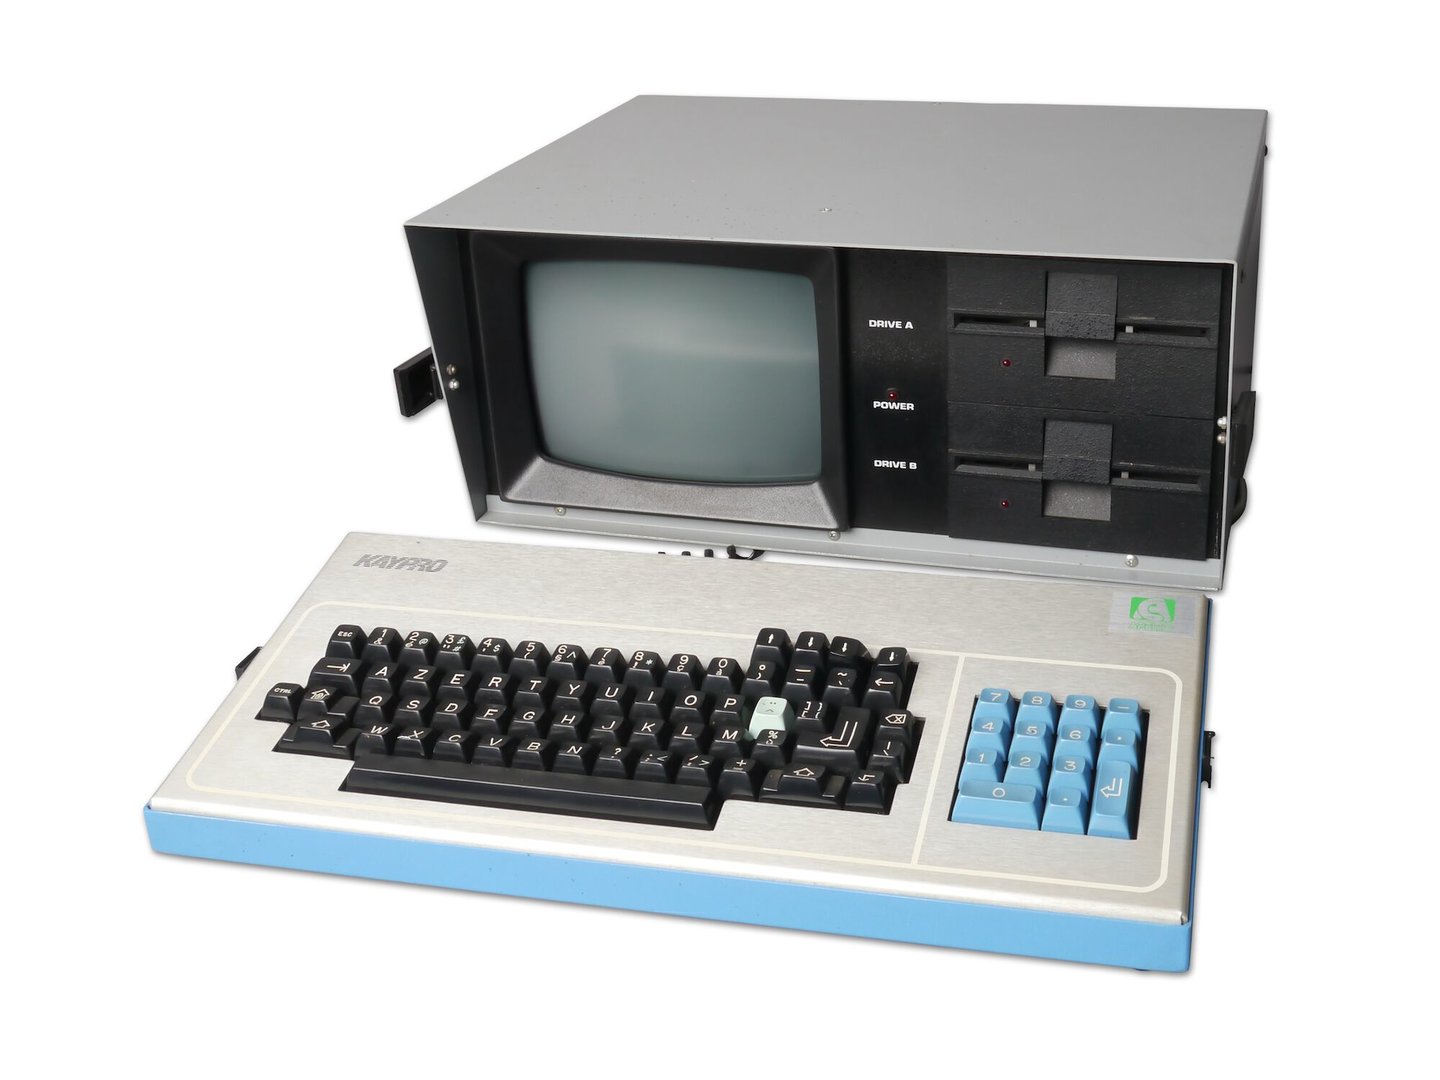 Draagbare computer van het merk Kaypro